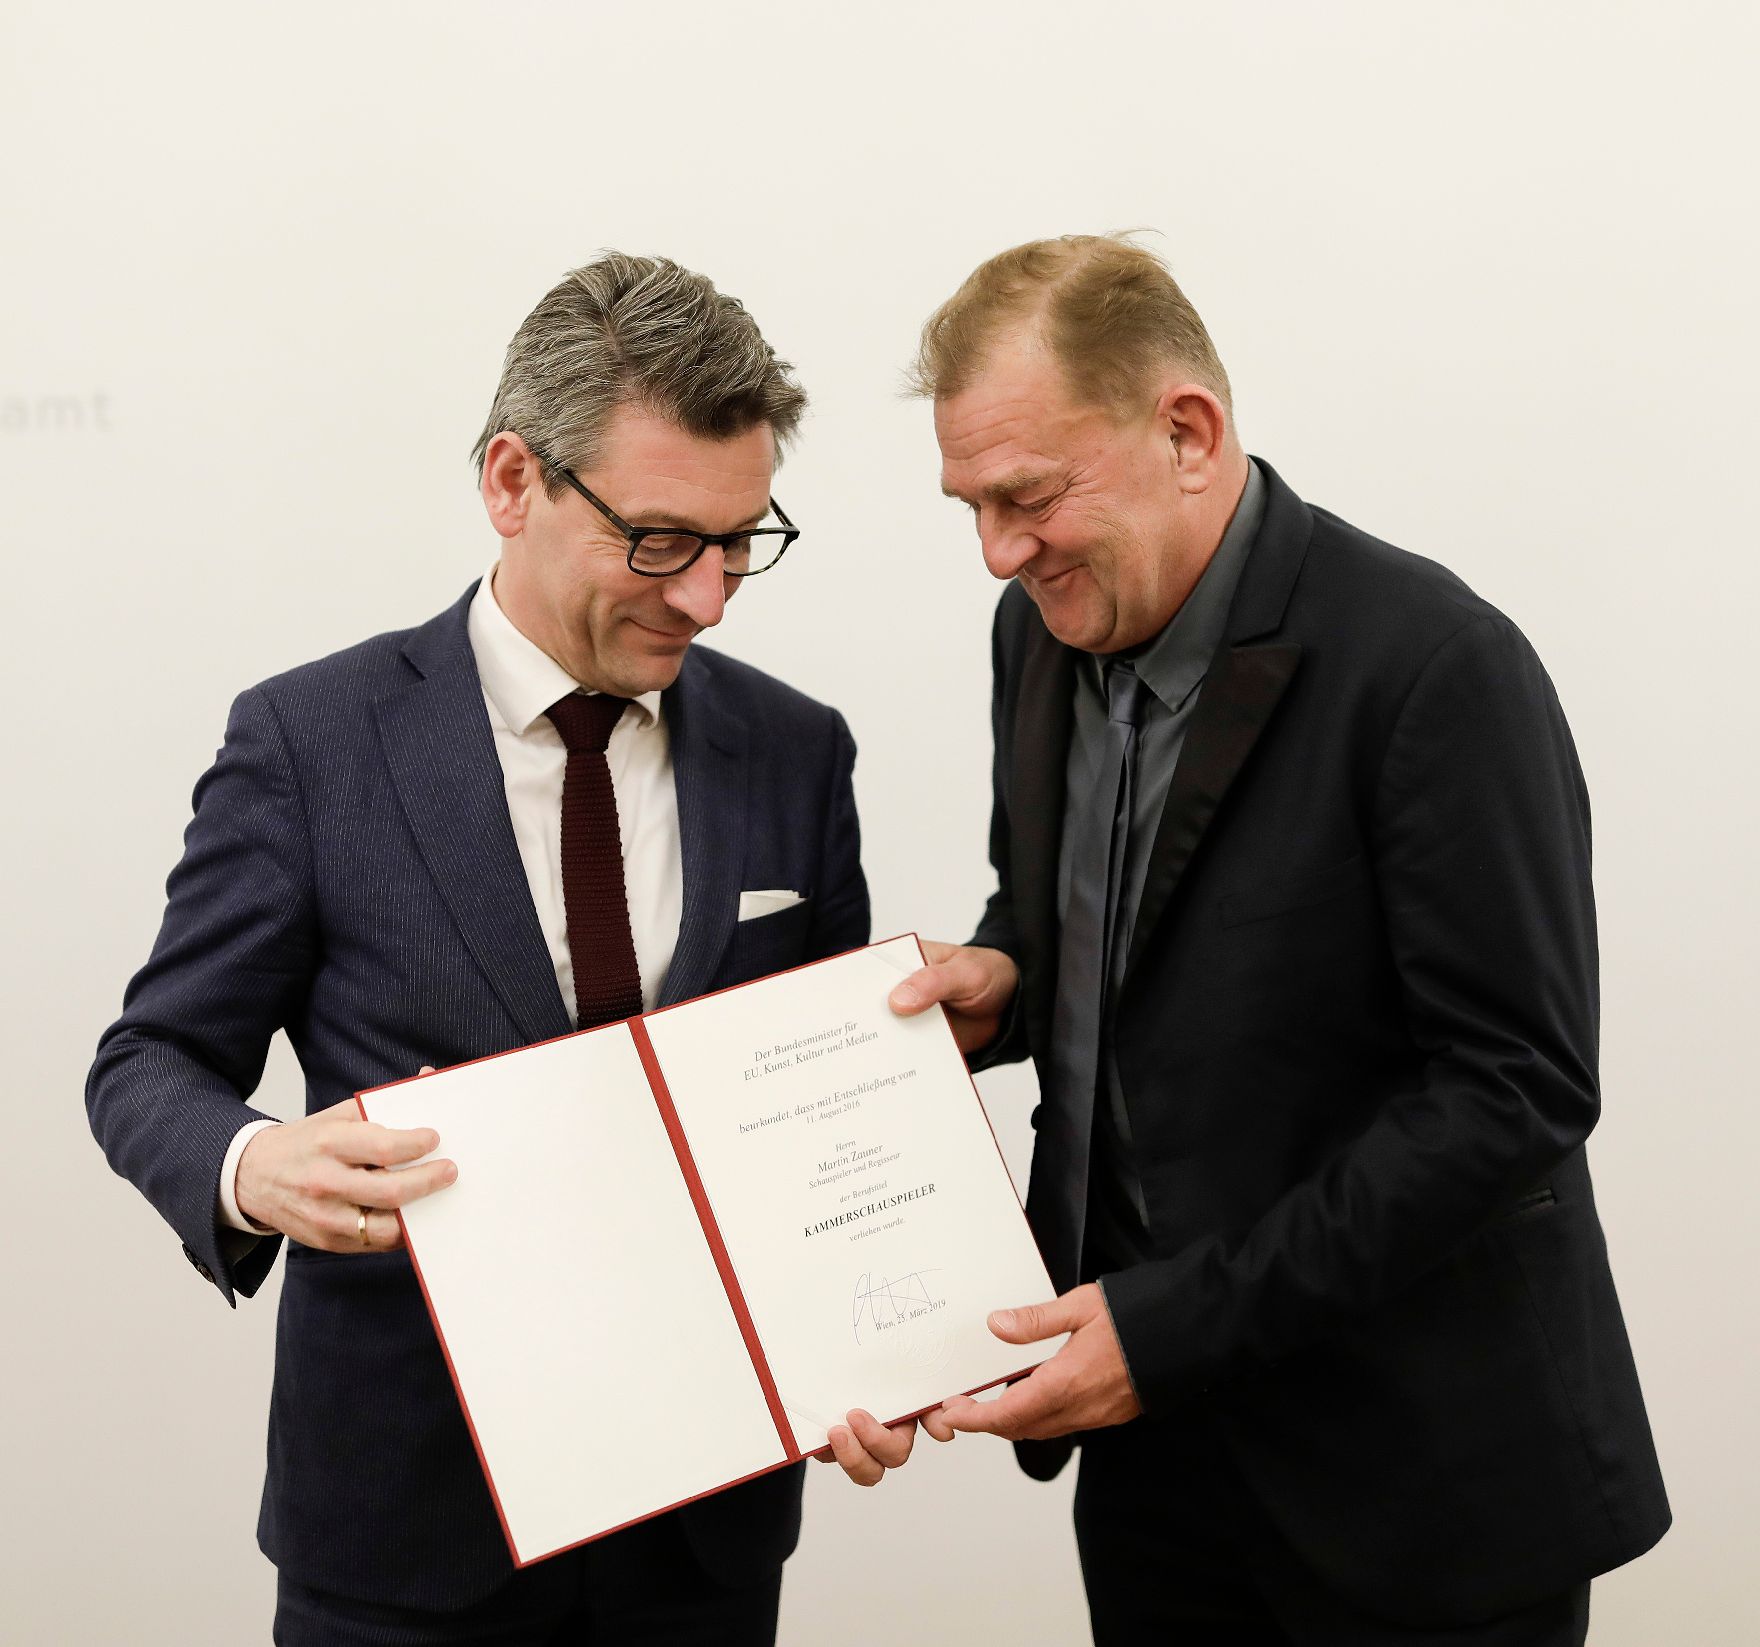 Am 25. März 2019 überreichte Sektionschef Jürgen Meindl (l.) die Urkunde, mit der Martin Zauner (r.) der Berufstitel Kammerschauspieler verliehen wurde.